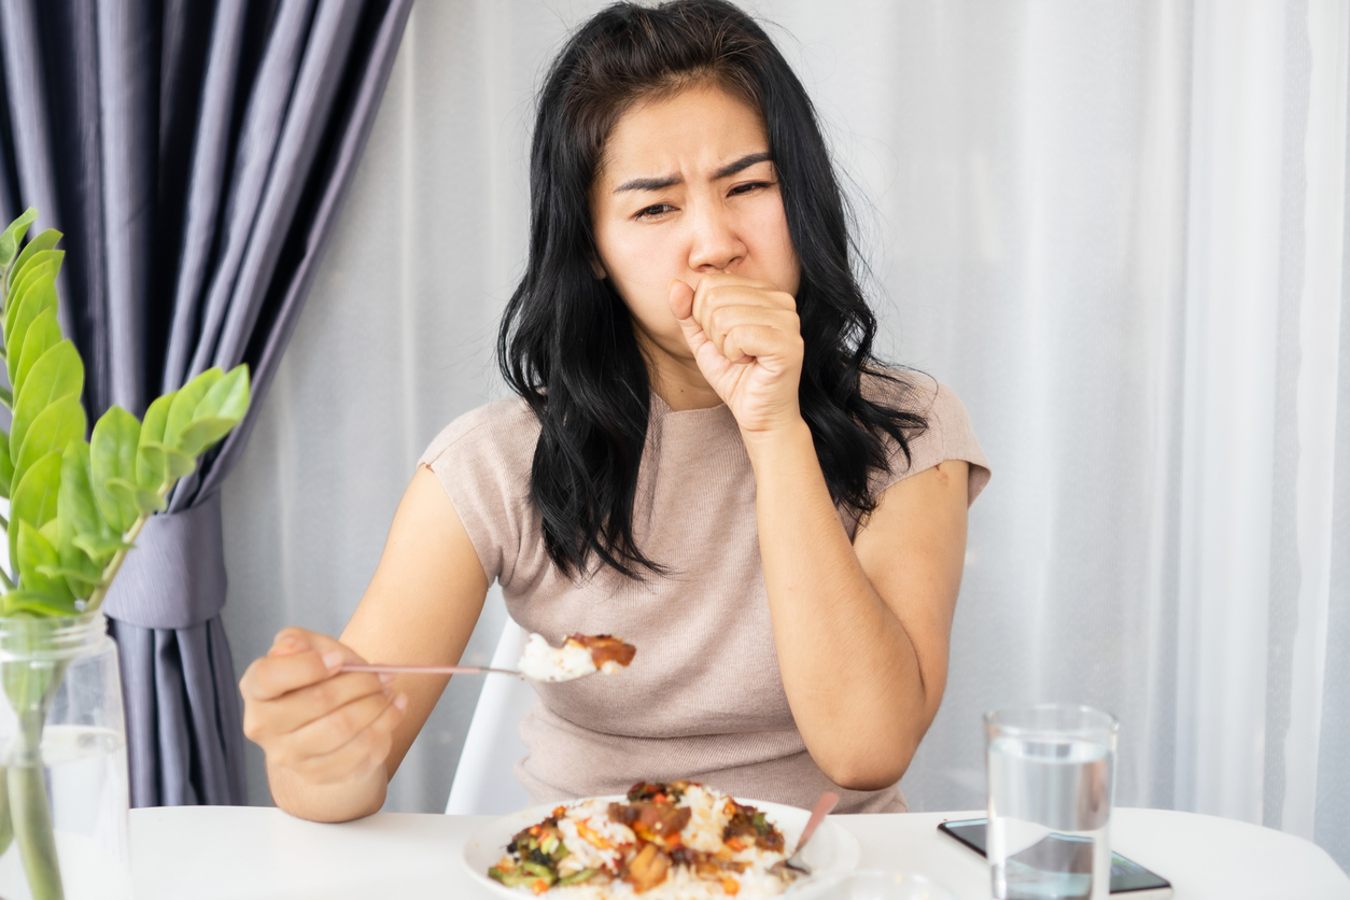 indício de câncer de ovário pode aparecer durante as refeições